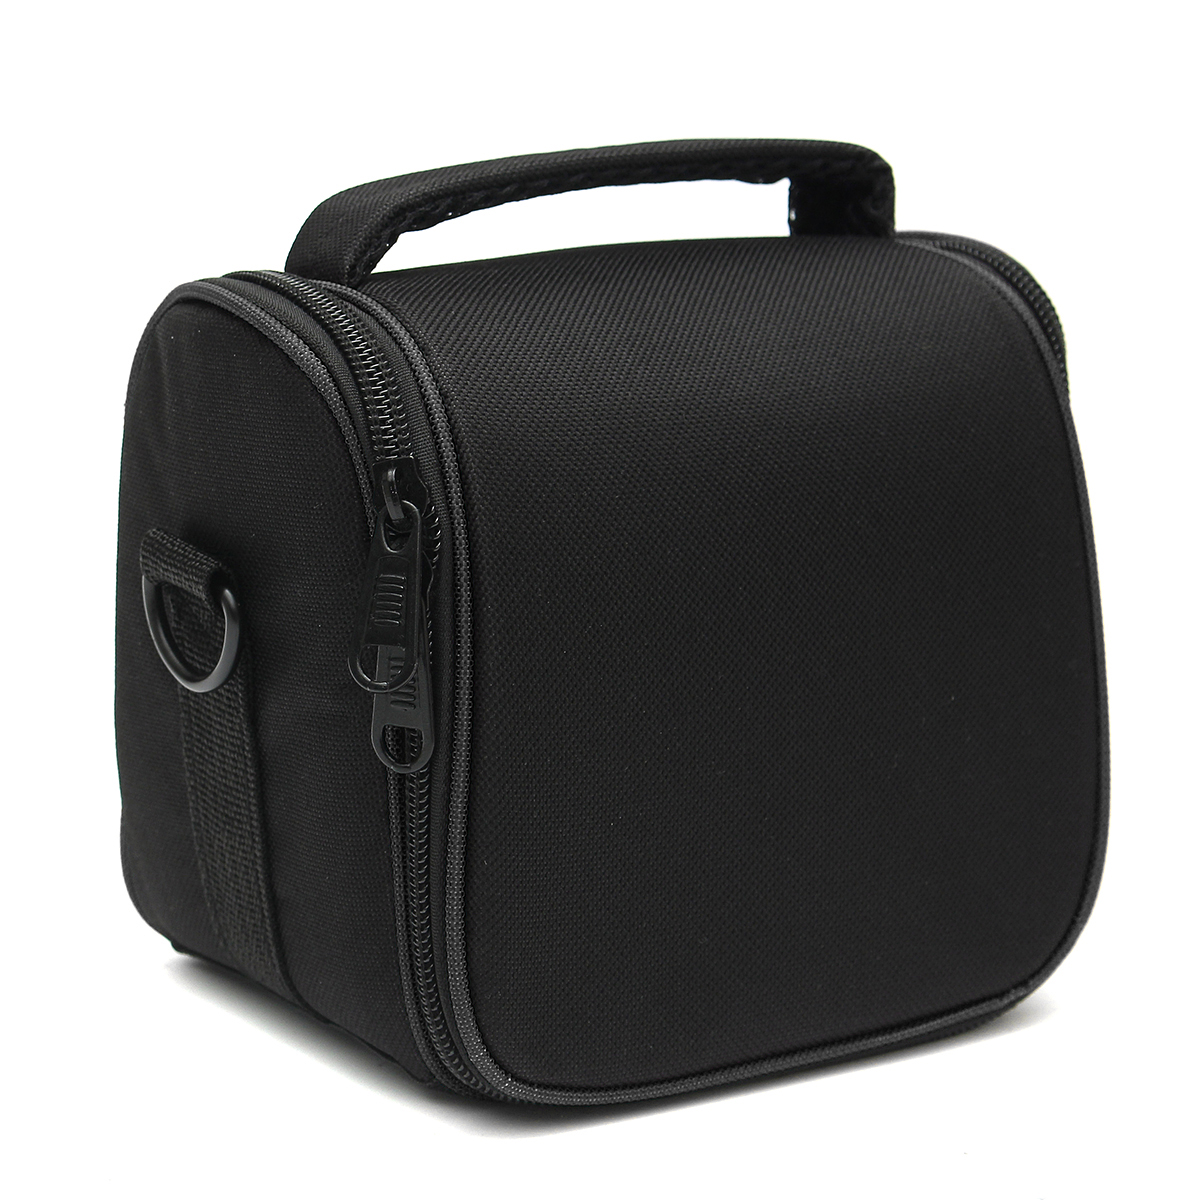 Find Water resistant Camera Shoulder Sling Bag Carry Travel Case for DLSR SLR Digital Camera Flash Lens for Sale on Gipsybee.com with cryptocurrencies